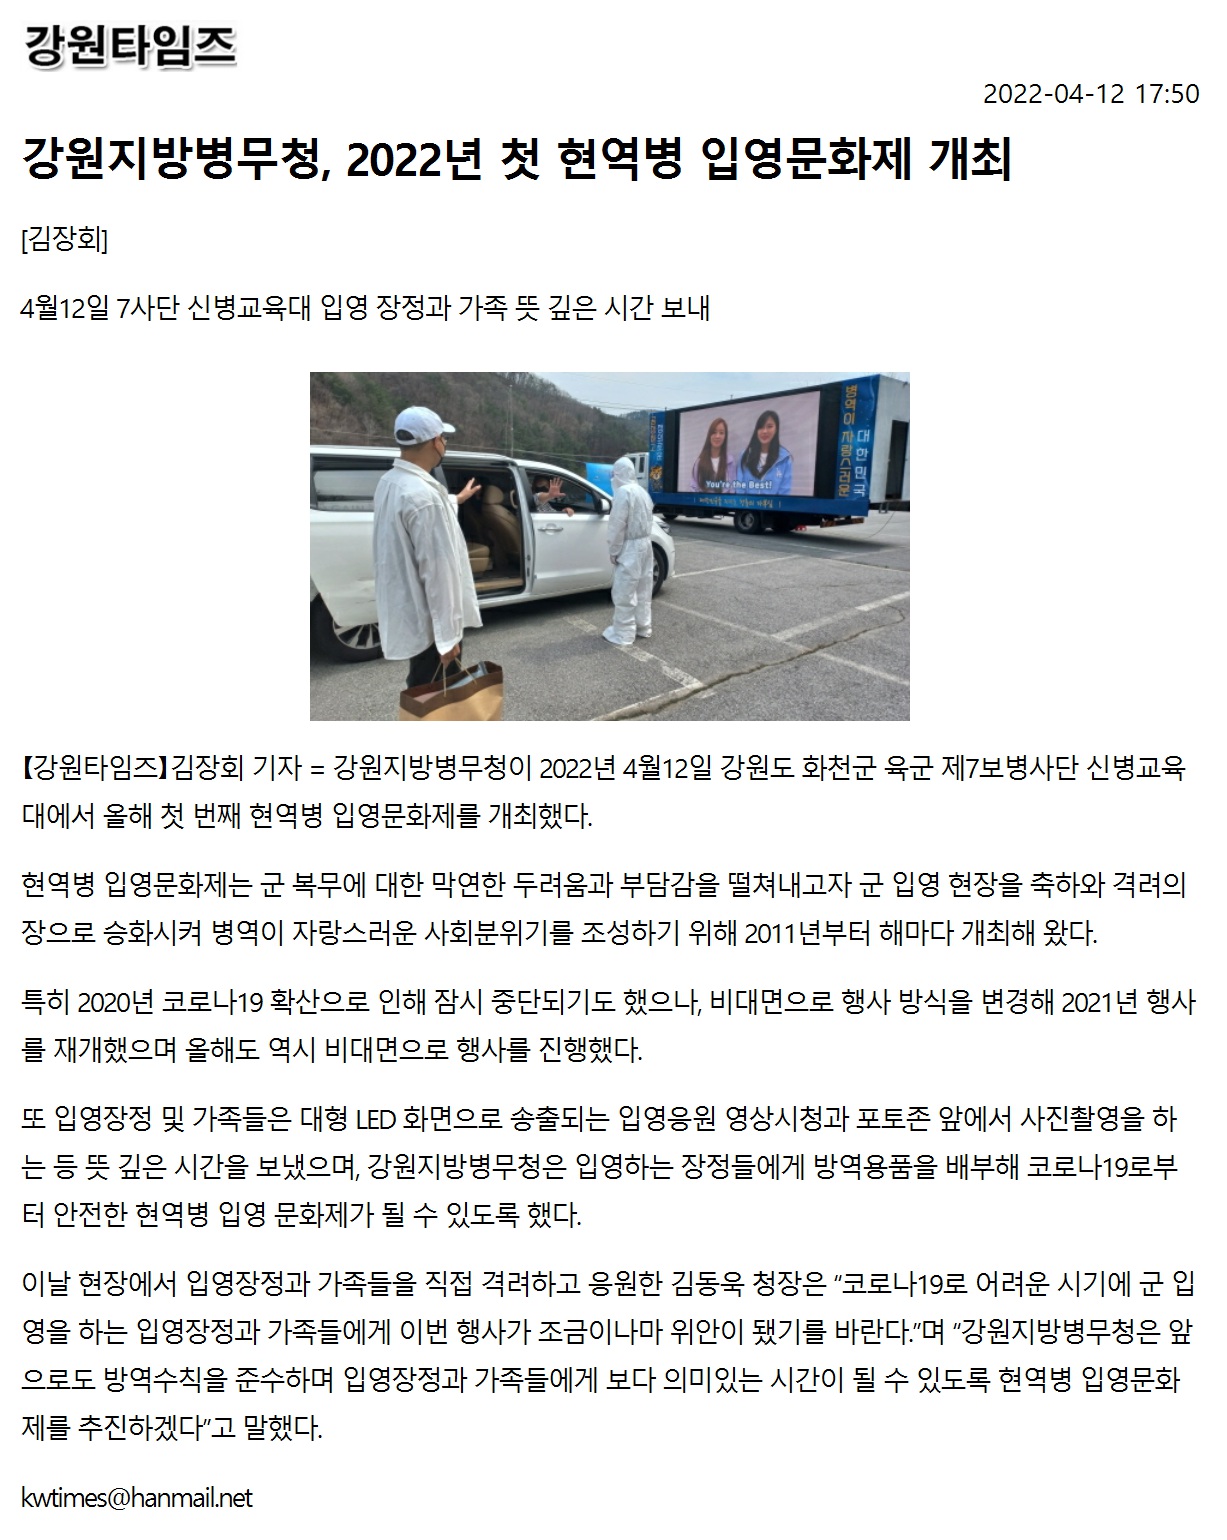 강원지방병무청, 2022년 첫 현역병 입영문화제 개최1